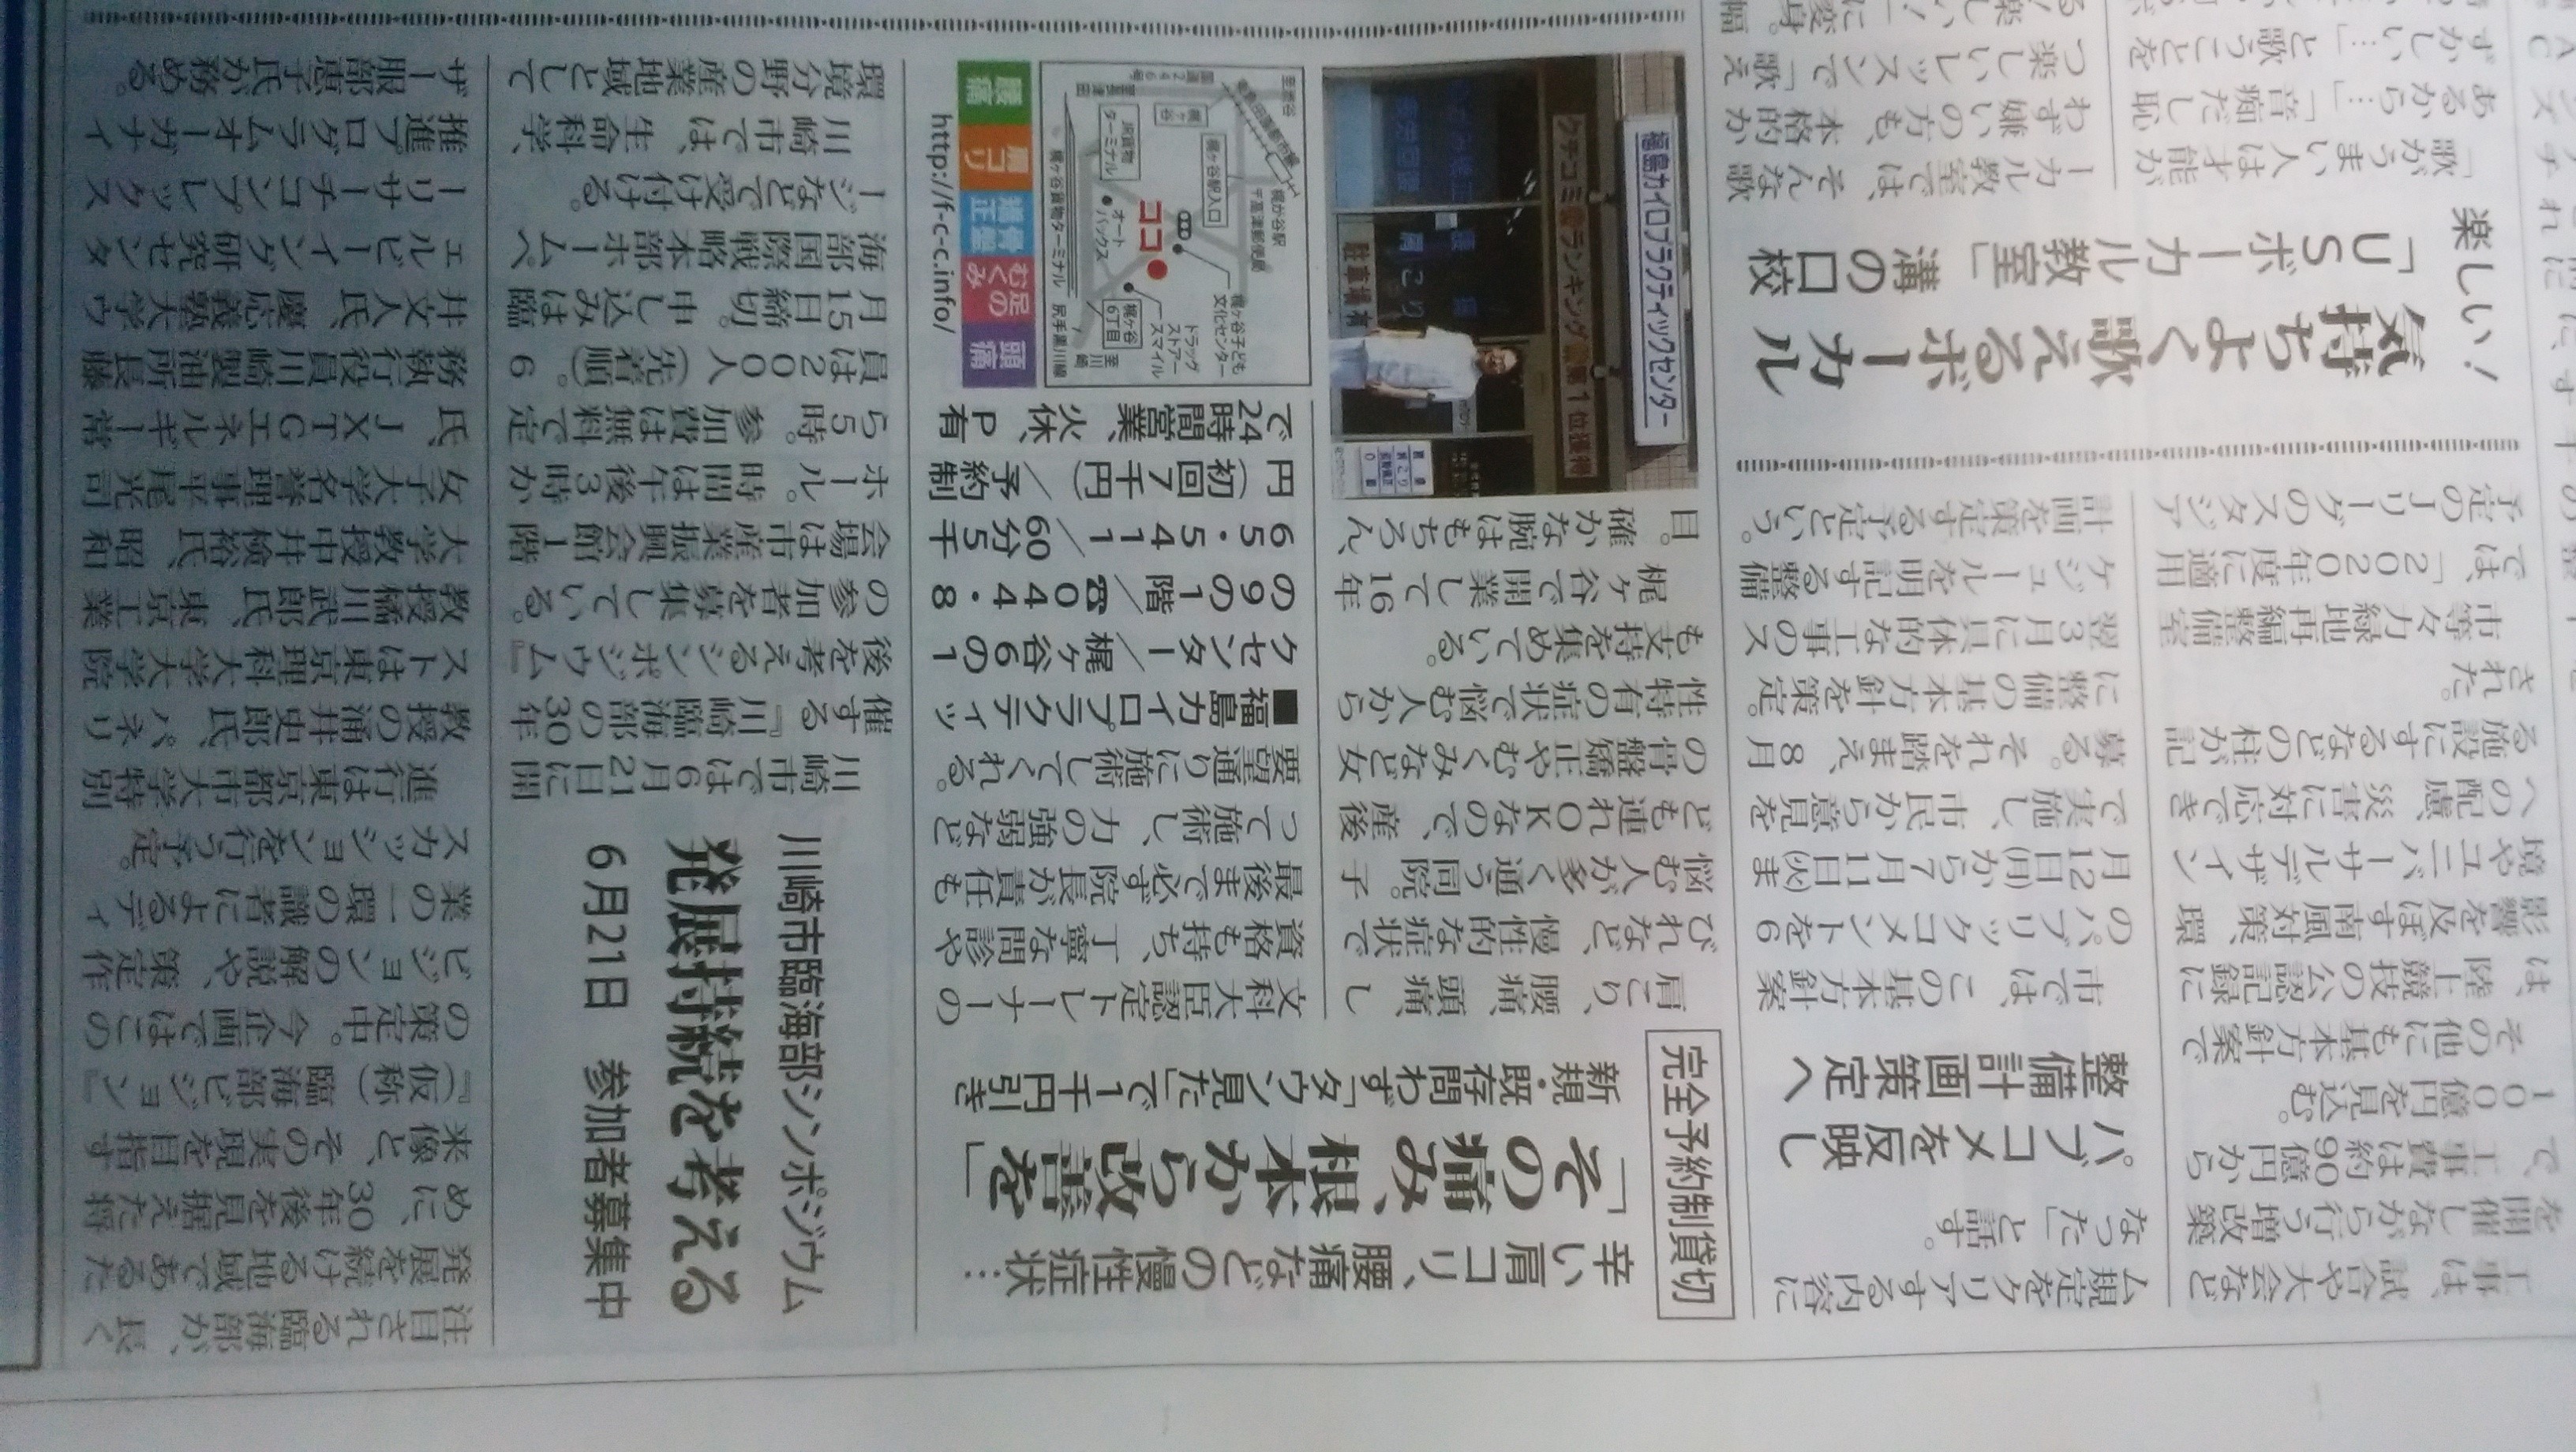 タウンニュースに掲載された福島カイロプラクティックセンターの記事